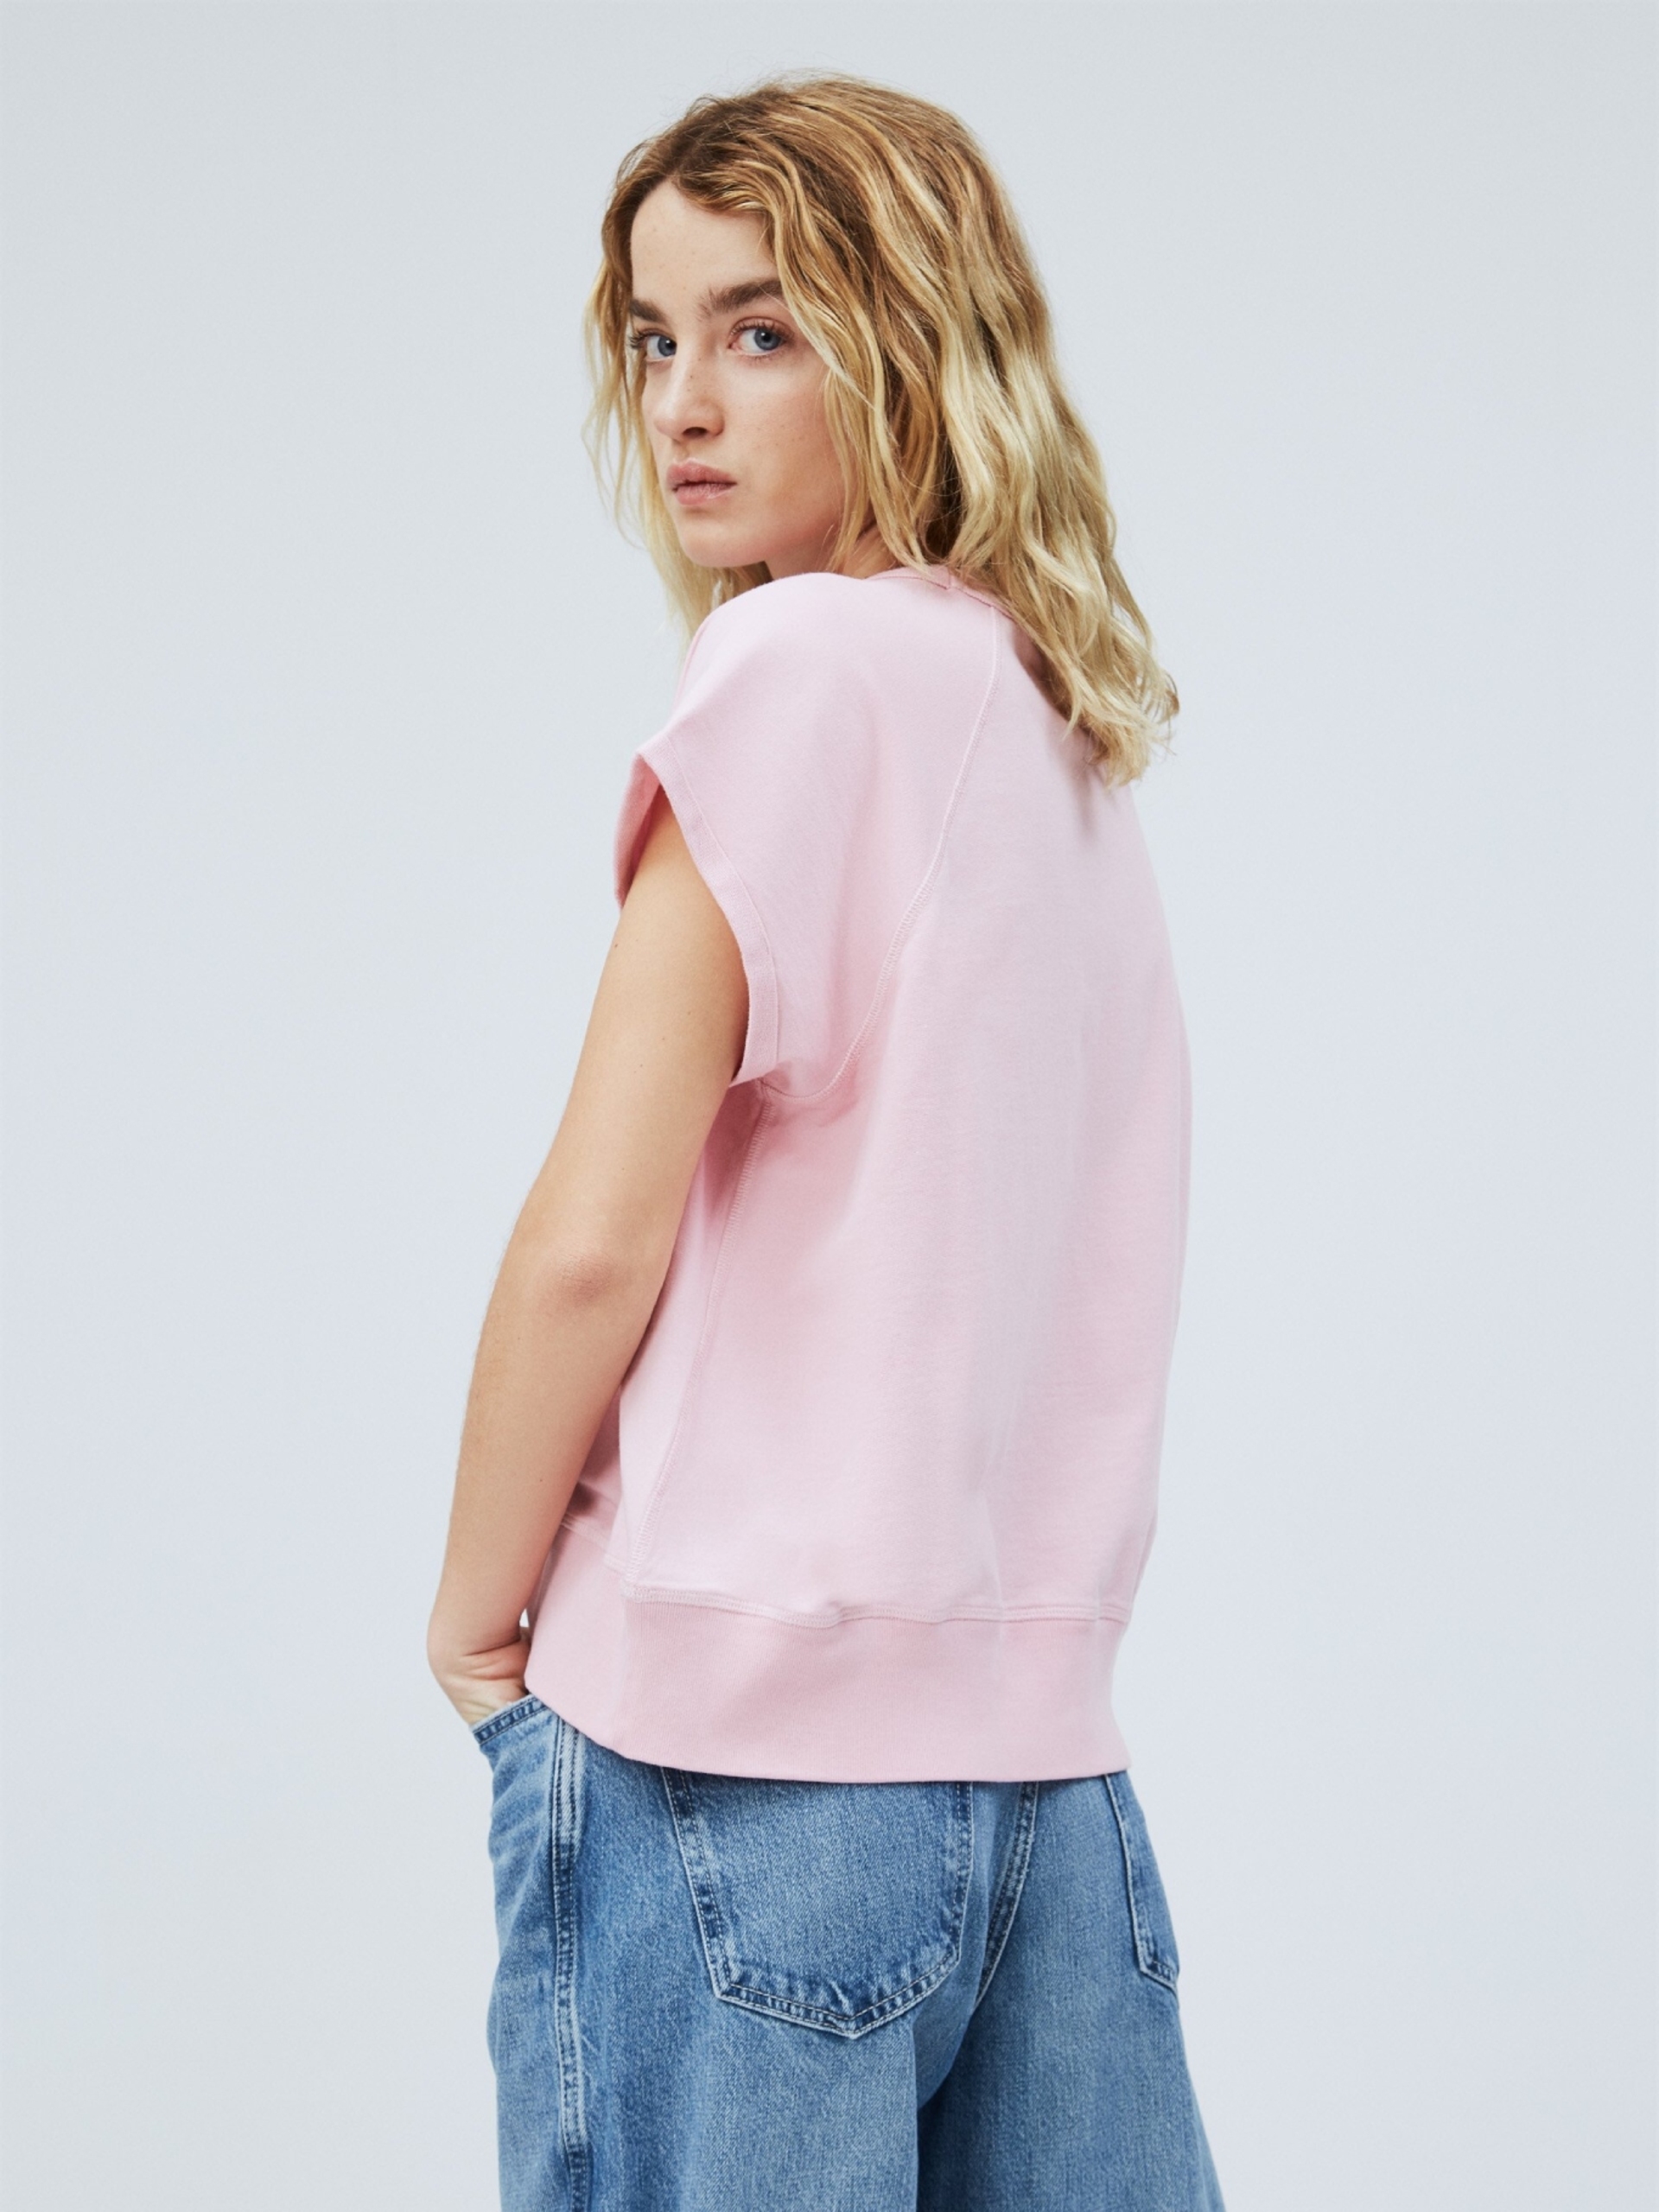 Pepe Jeans dámské růžové tričko Gala - M (325)